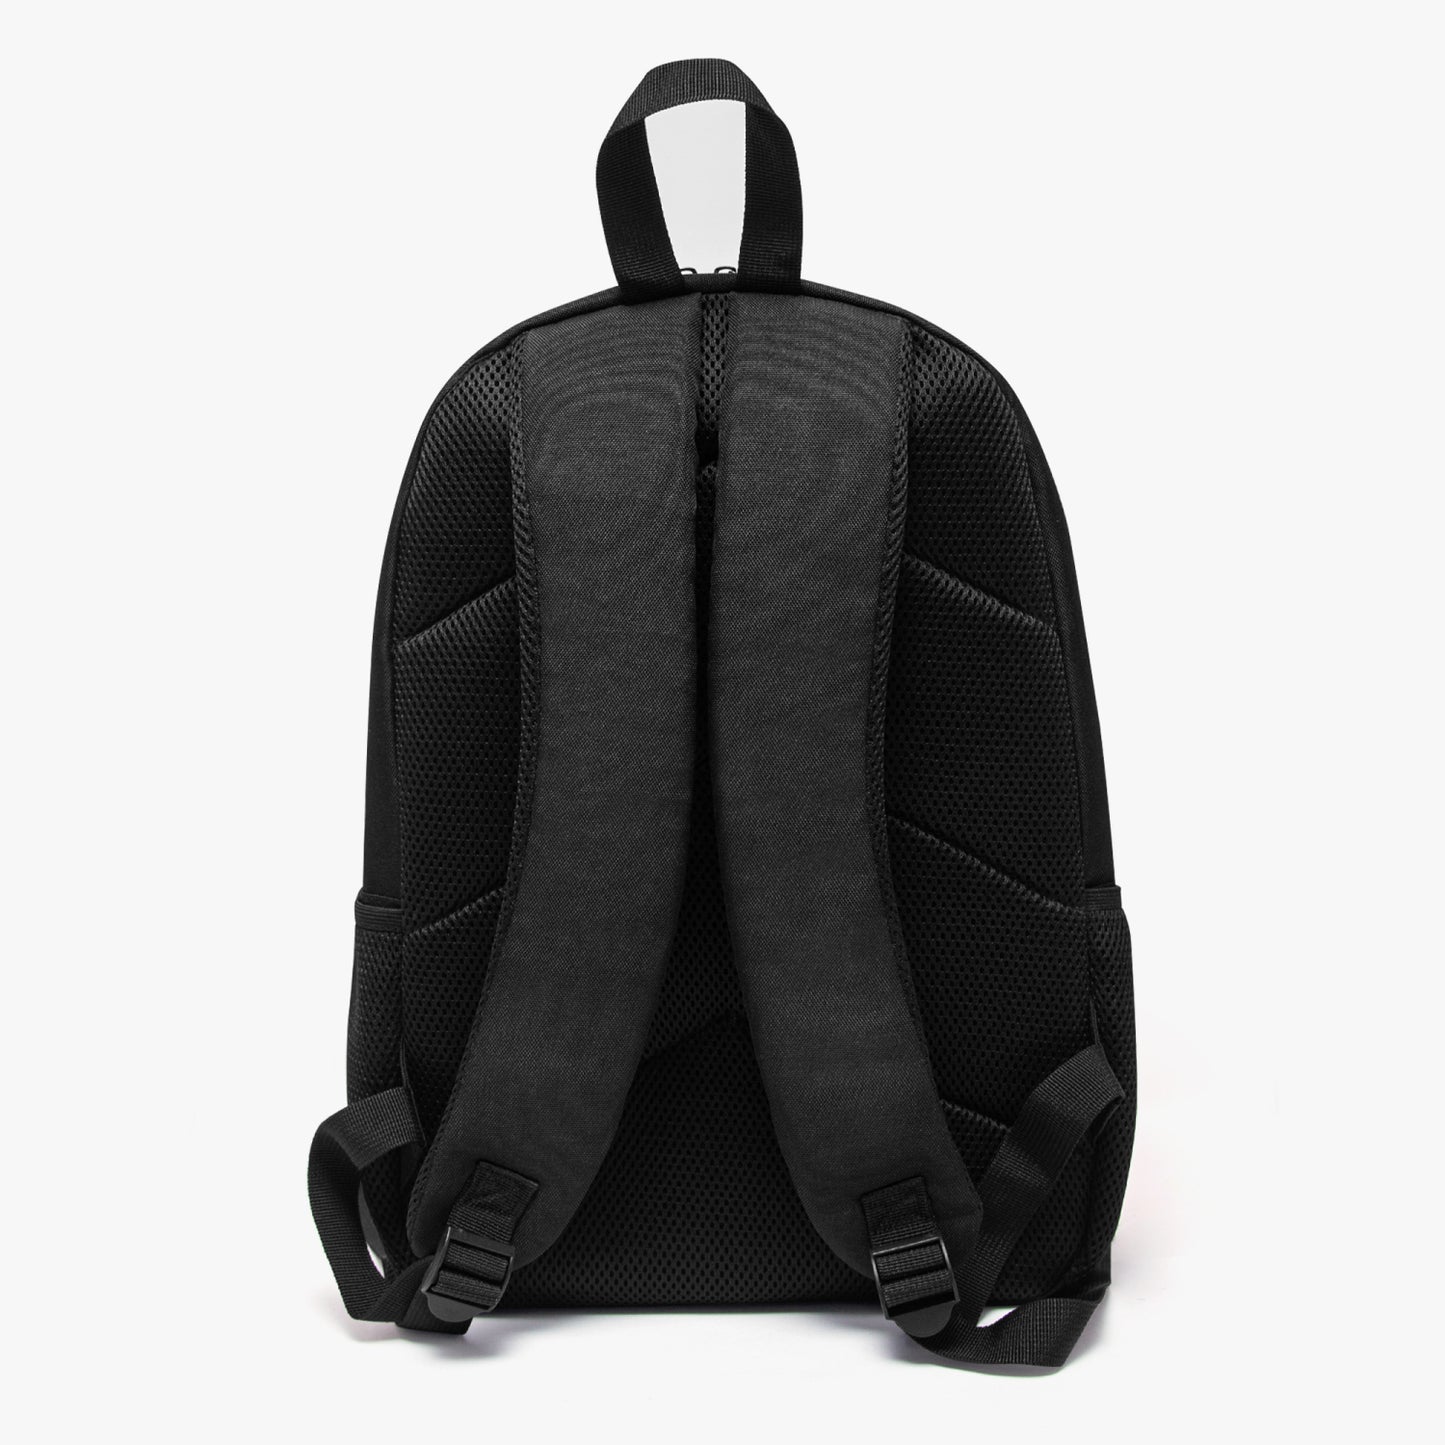 BERSERK Laptop Backpack